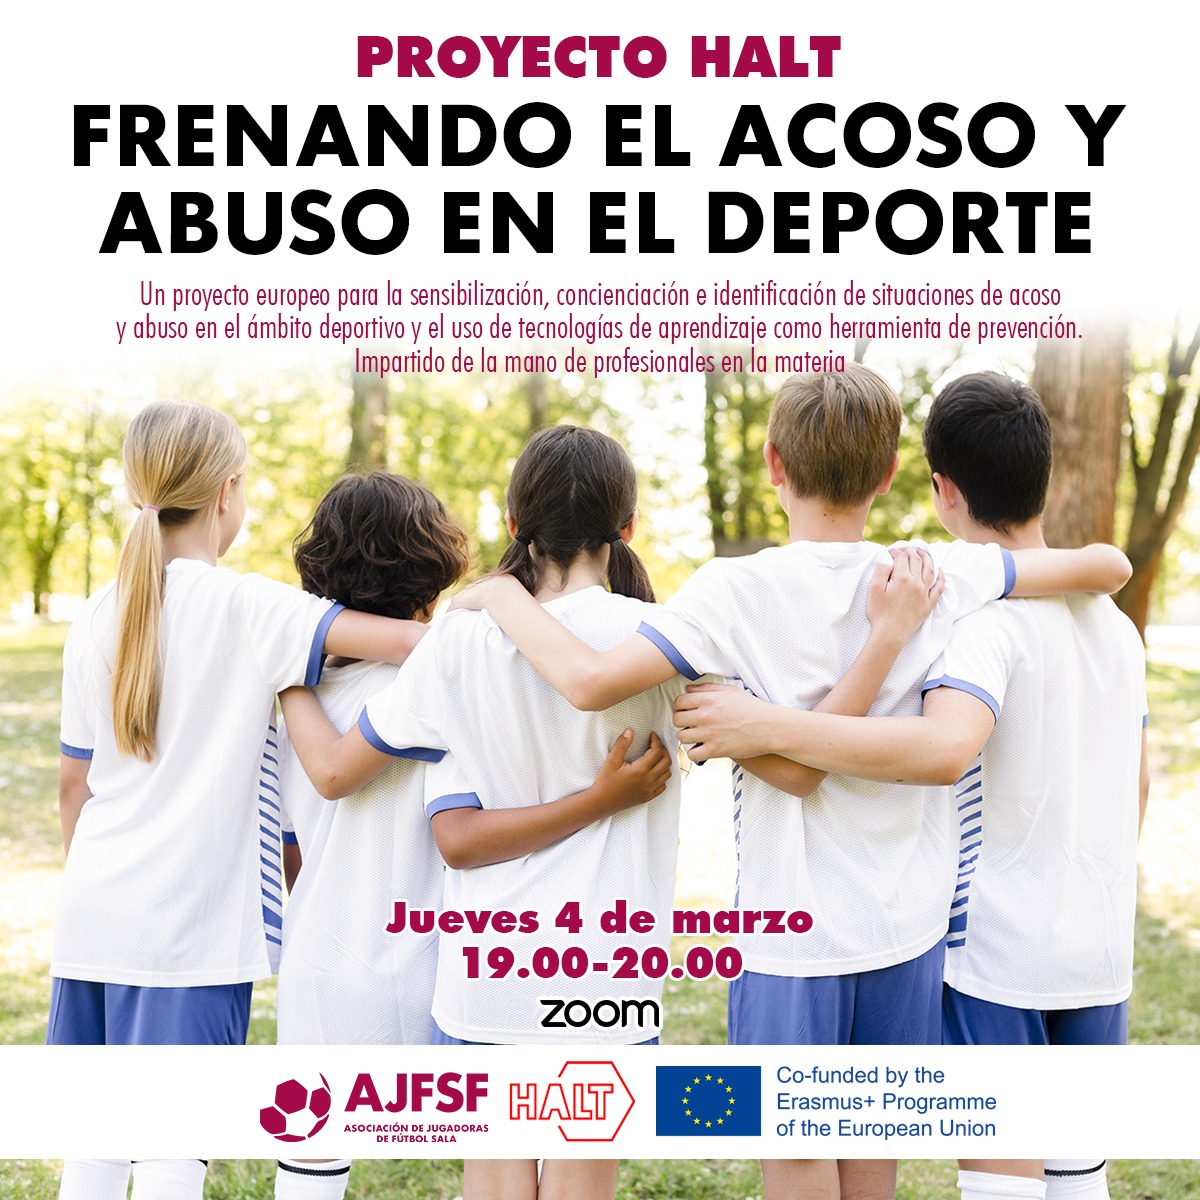 Presentación del proyecto Europeo HALT, a través del seminario: "Frenar el acoso y abuso en el deporte"